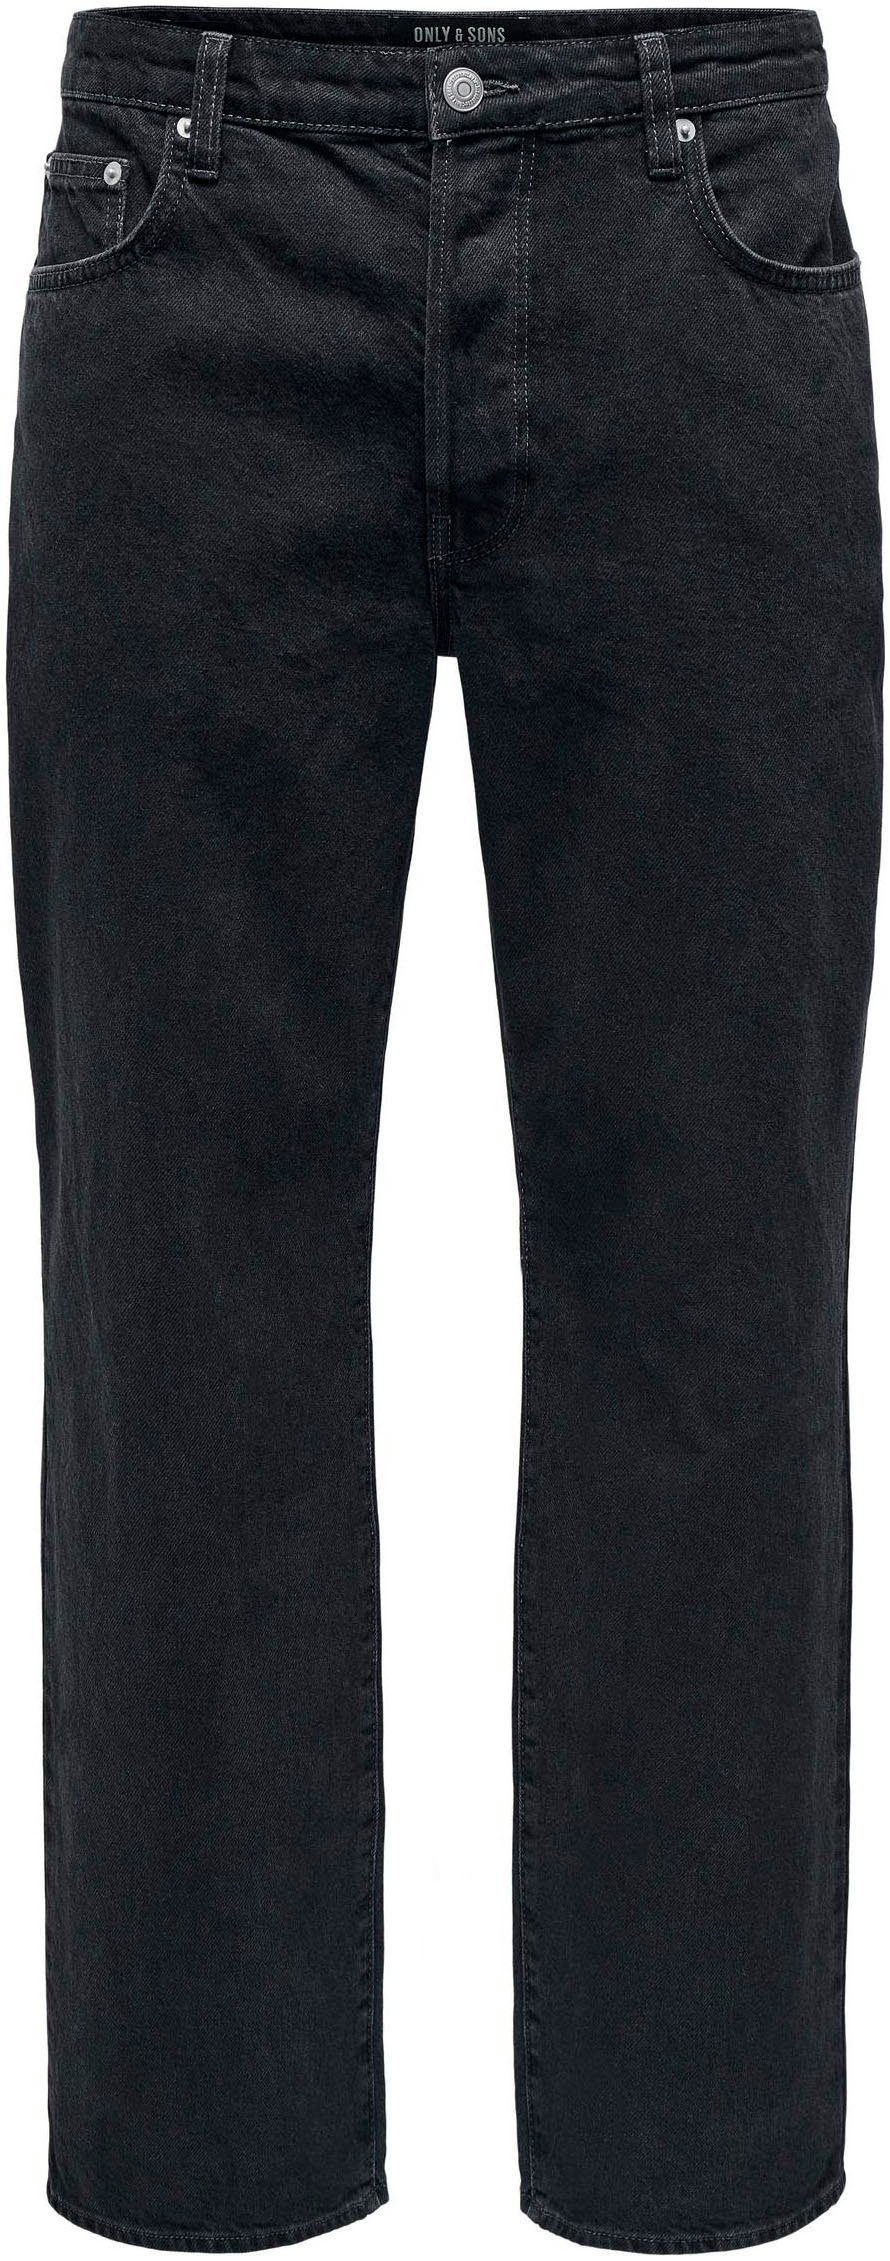 ONLY SLIM NOOS LBD AZG Black & Slim-fit-Jeans Washed 8263 ONSLOOM DNM SONS